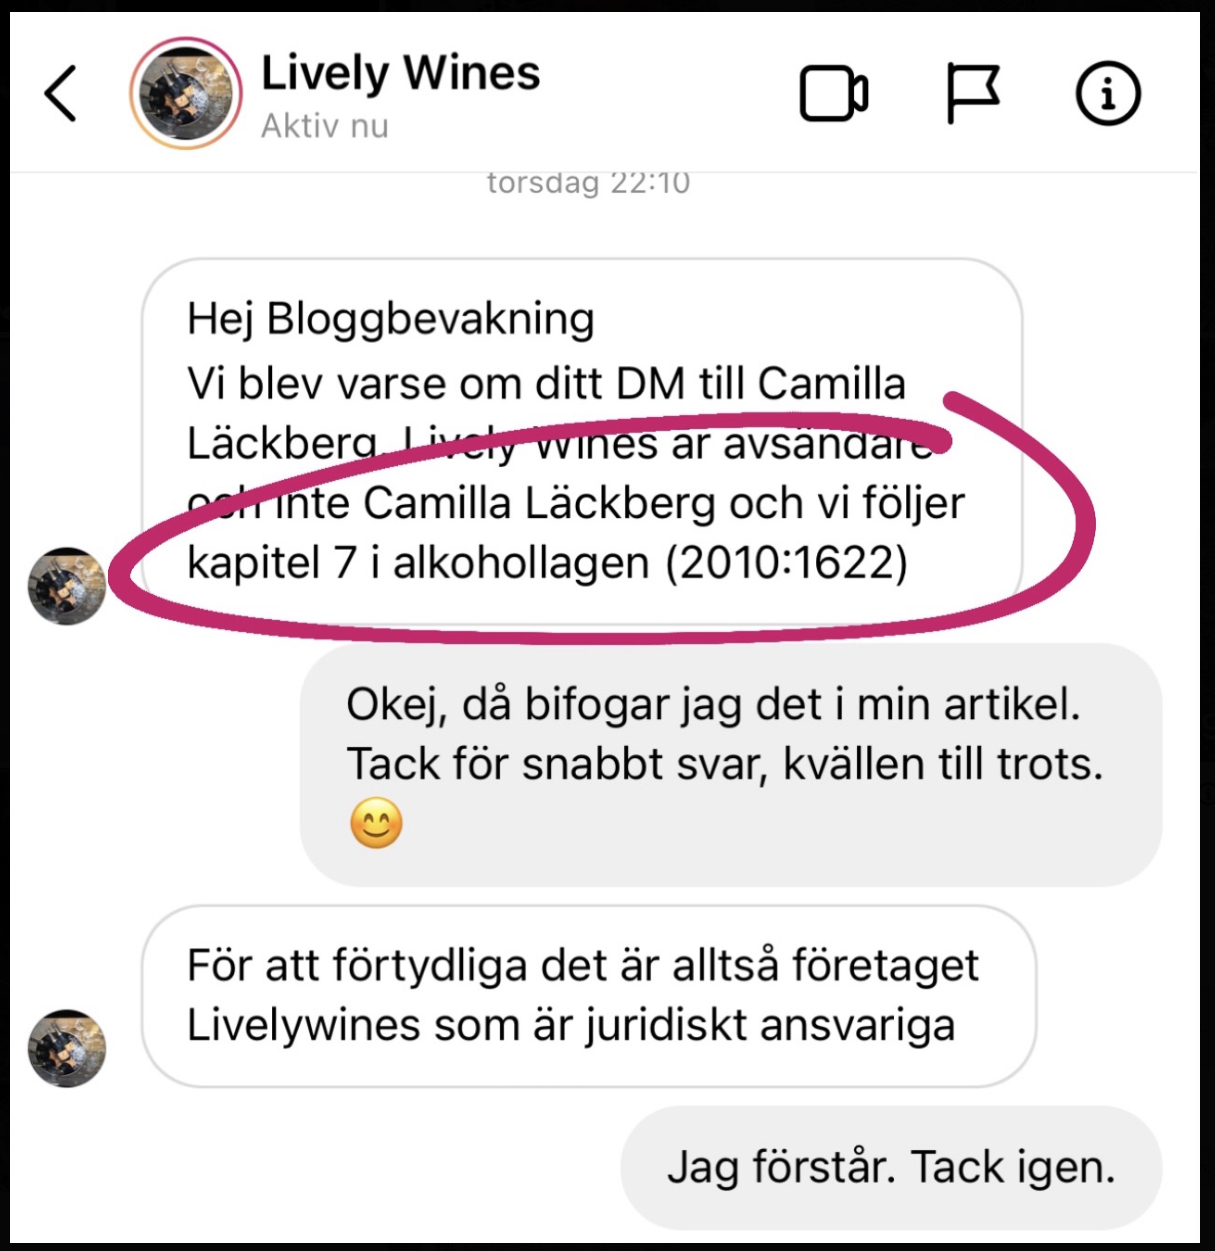 Dm från Lively Wines: Hej Bloggbevakning Vi blev varse om ditt DM till Camilla Läckberg. Lively Wines är avsändare och inte Camilla Läckberg och vi följer kapitel 7 i alkohollagen (2010:1622)